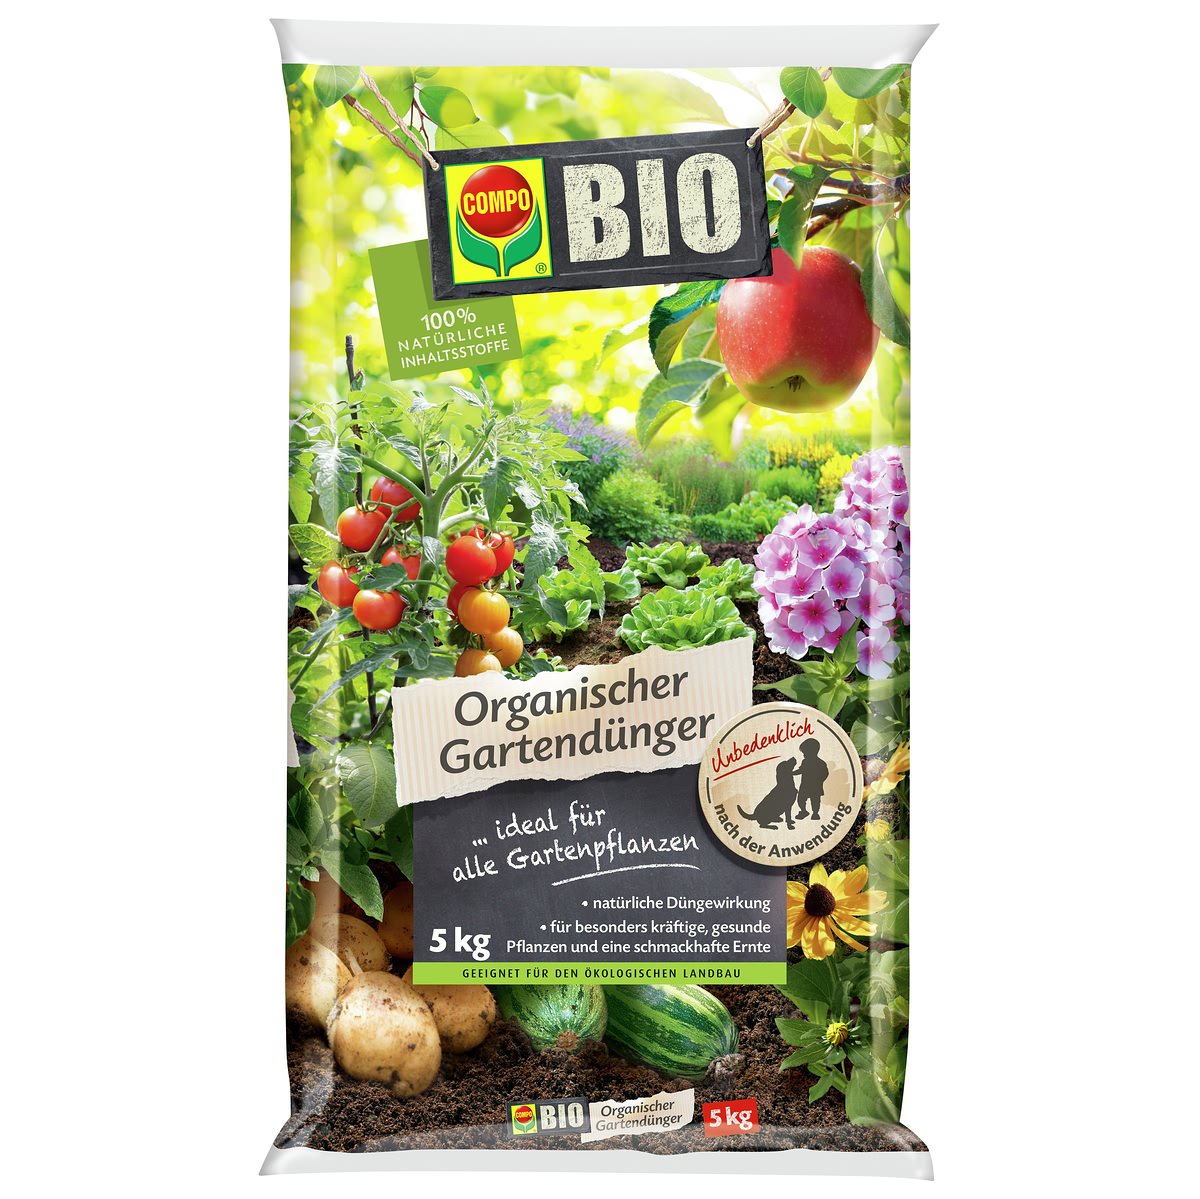 COMPO BIO Organischer Gartendünger 5kg